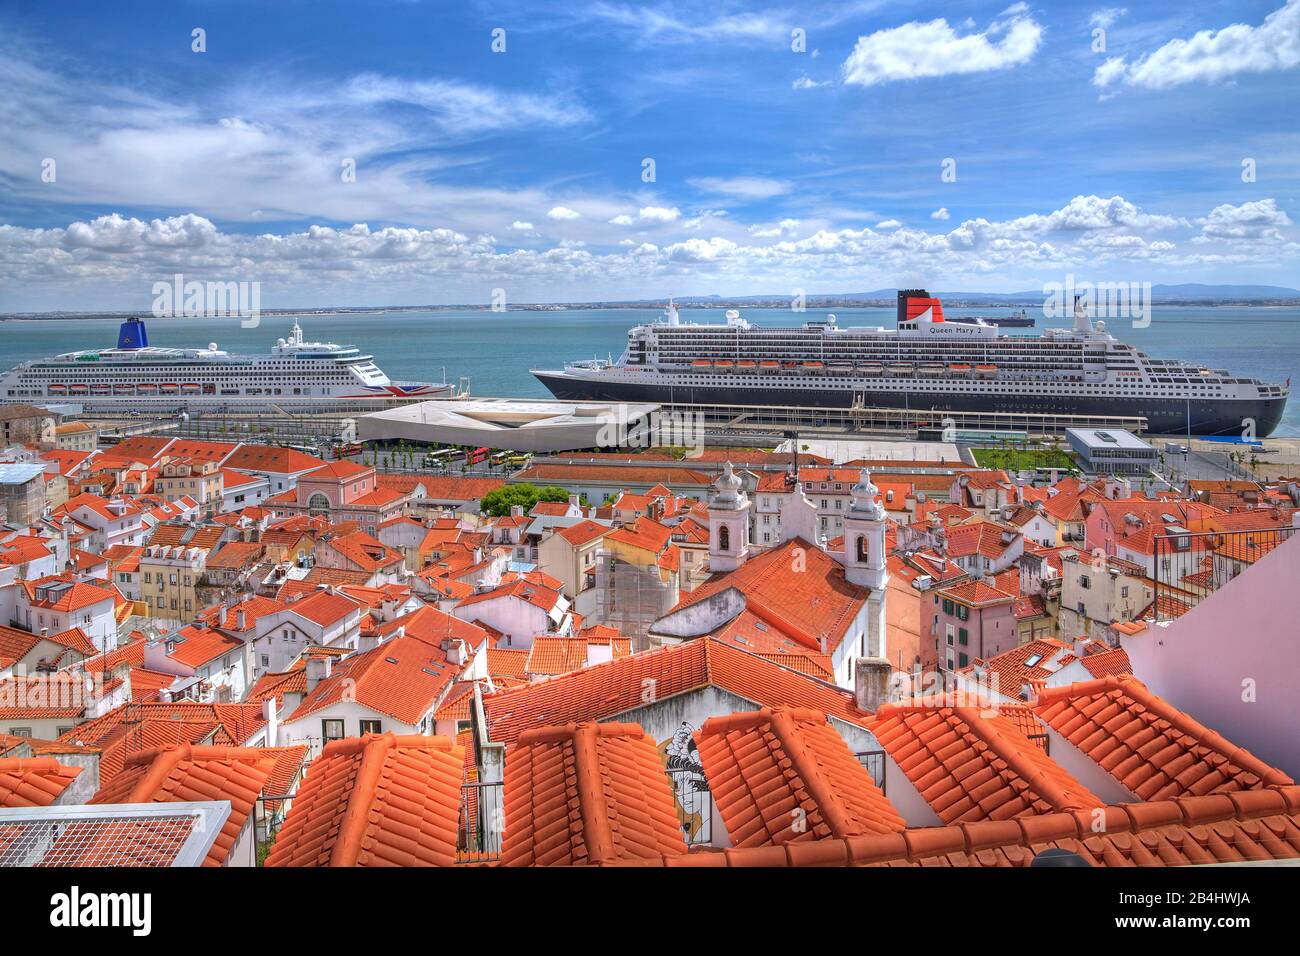 Altstadtdächer mit dem Kreuzfahrtschiff Aurora und dem Transatlantikliner Queen Mary 2 im Hafen am Tejo, Lissabon, Portugal Stockfoto